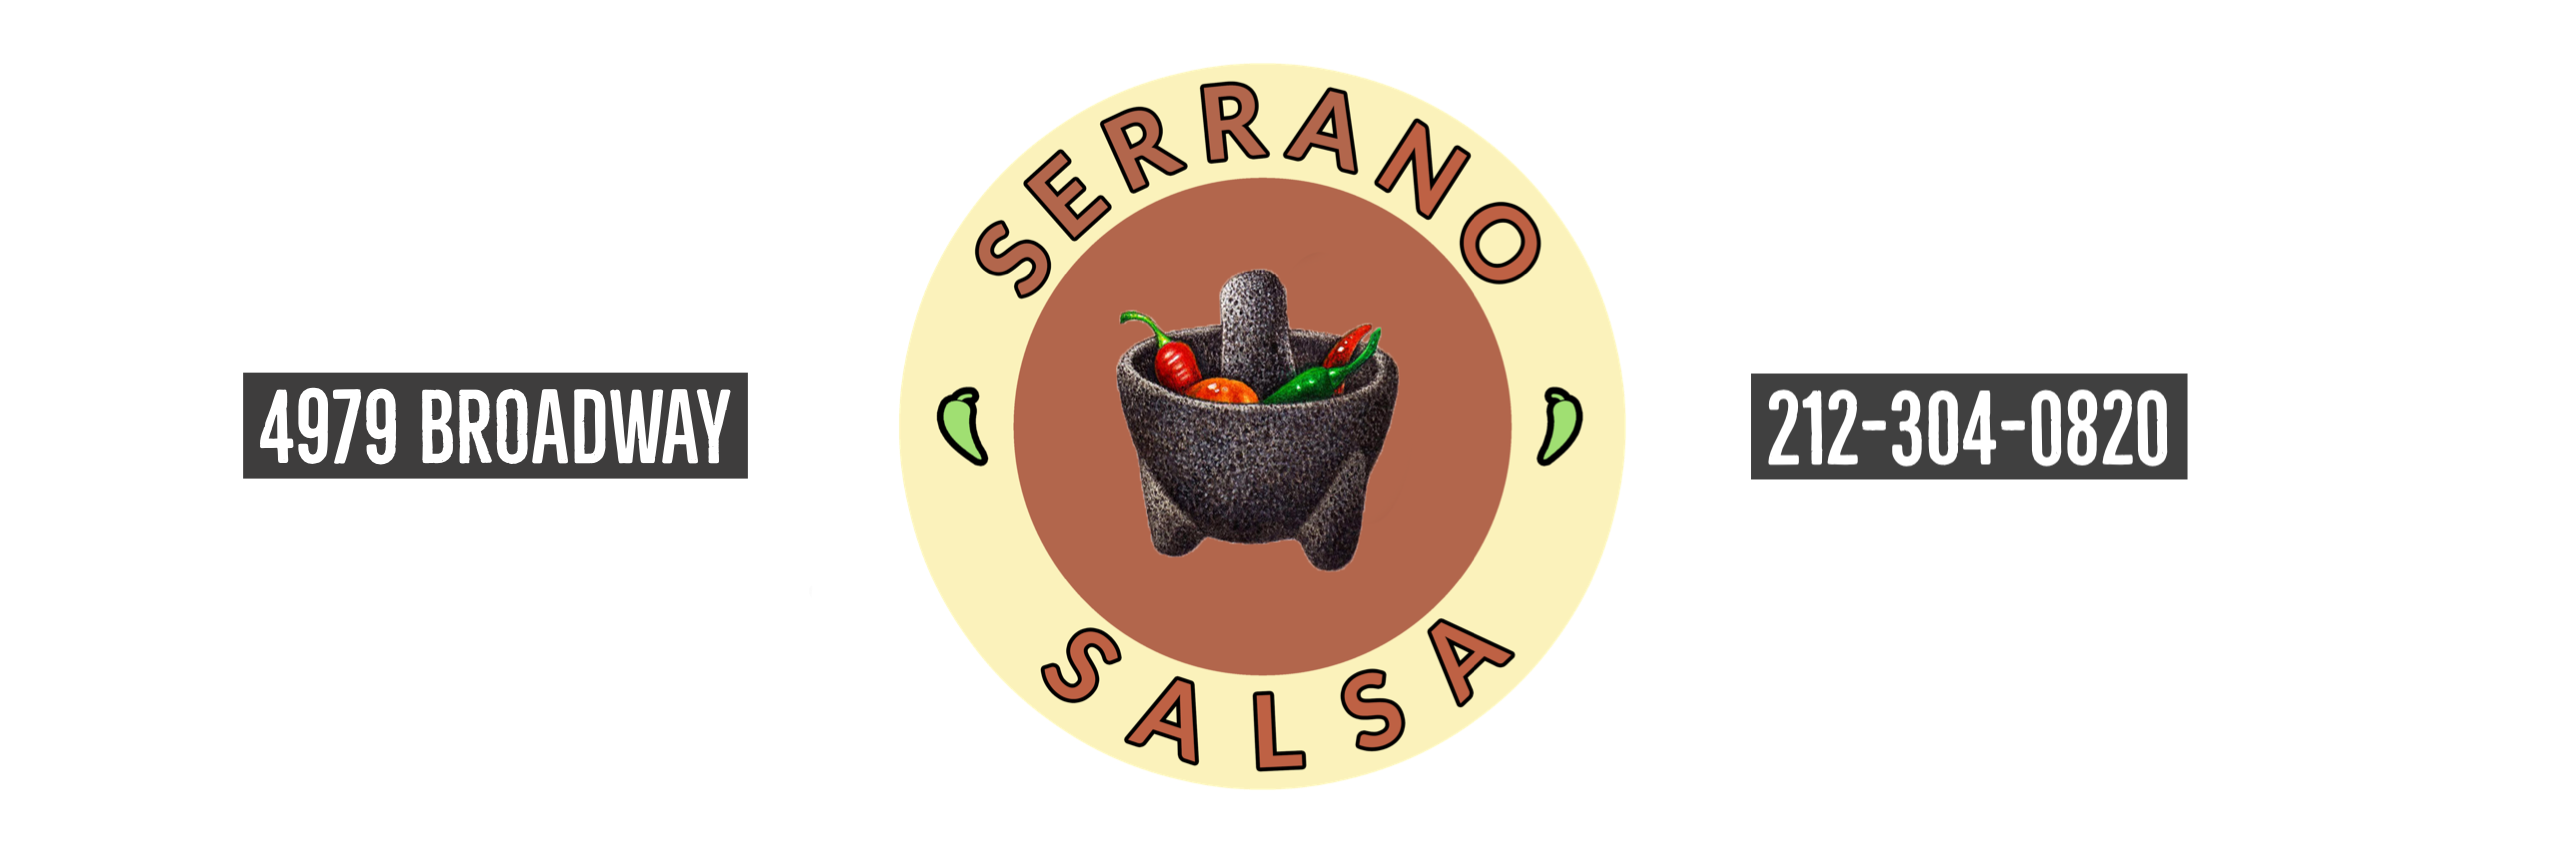 Serrano Salsa